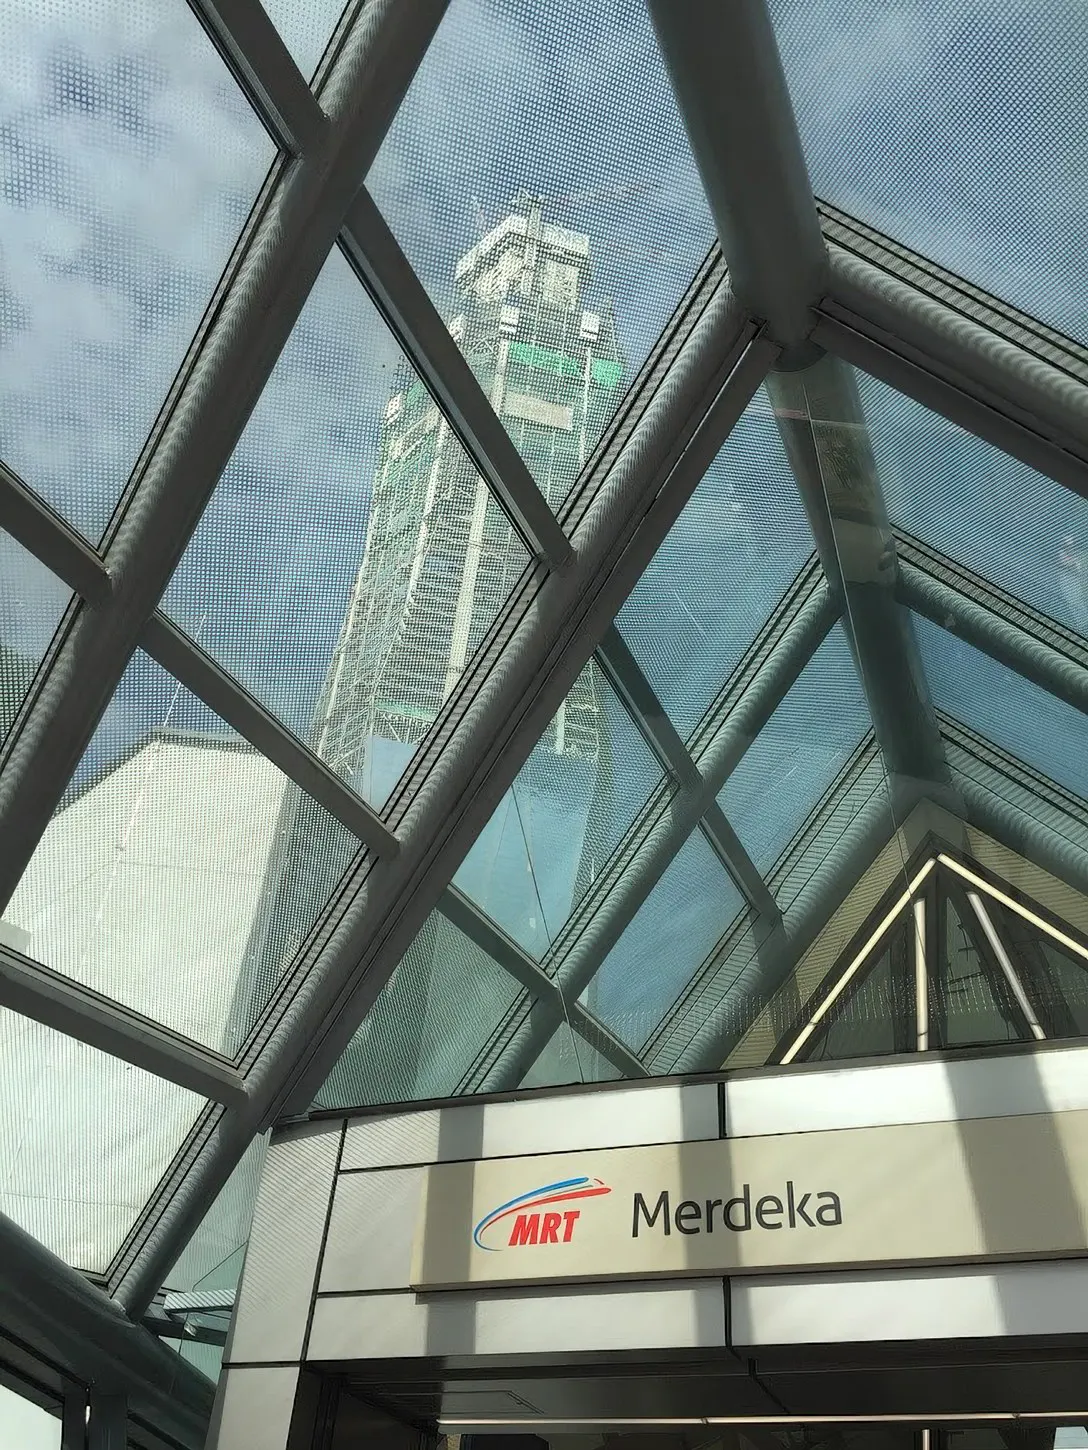 Merdeka MRT Station